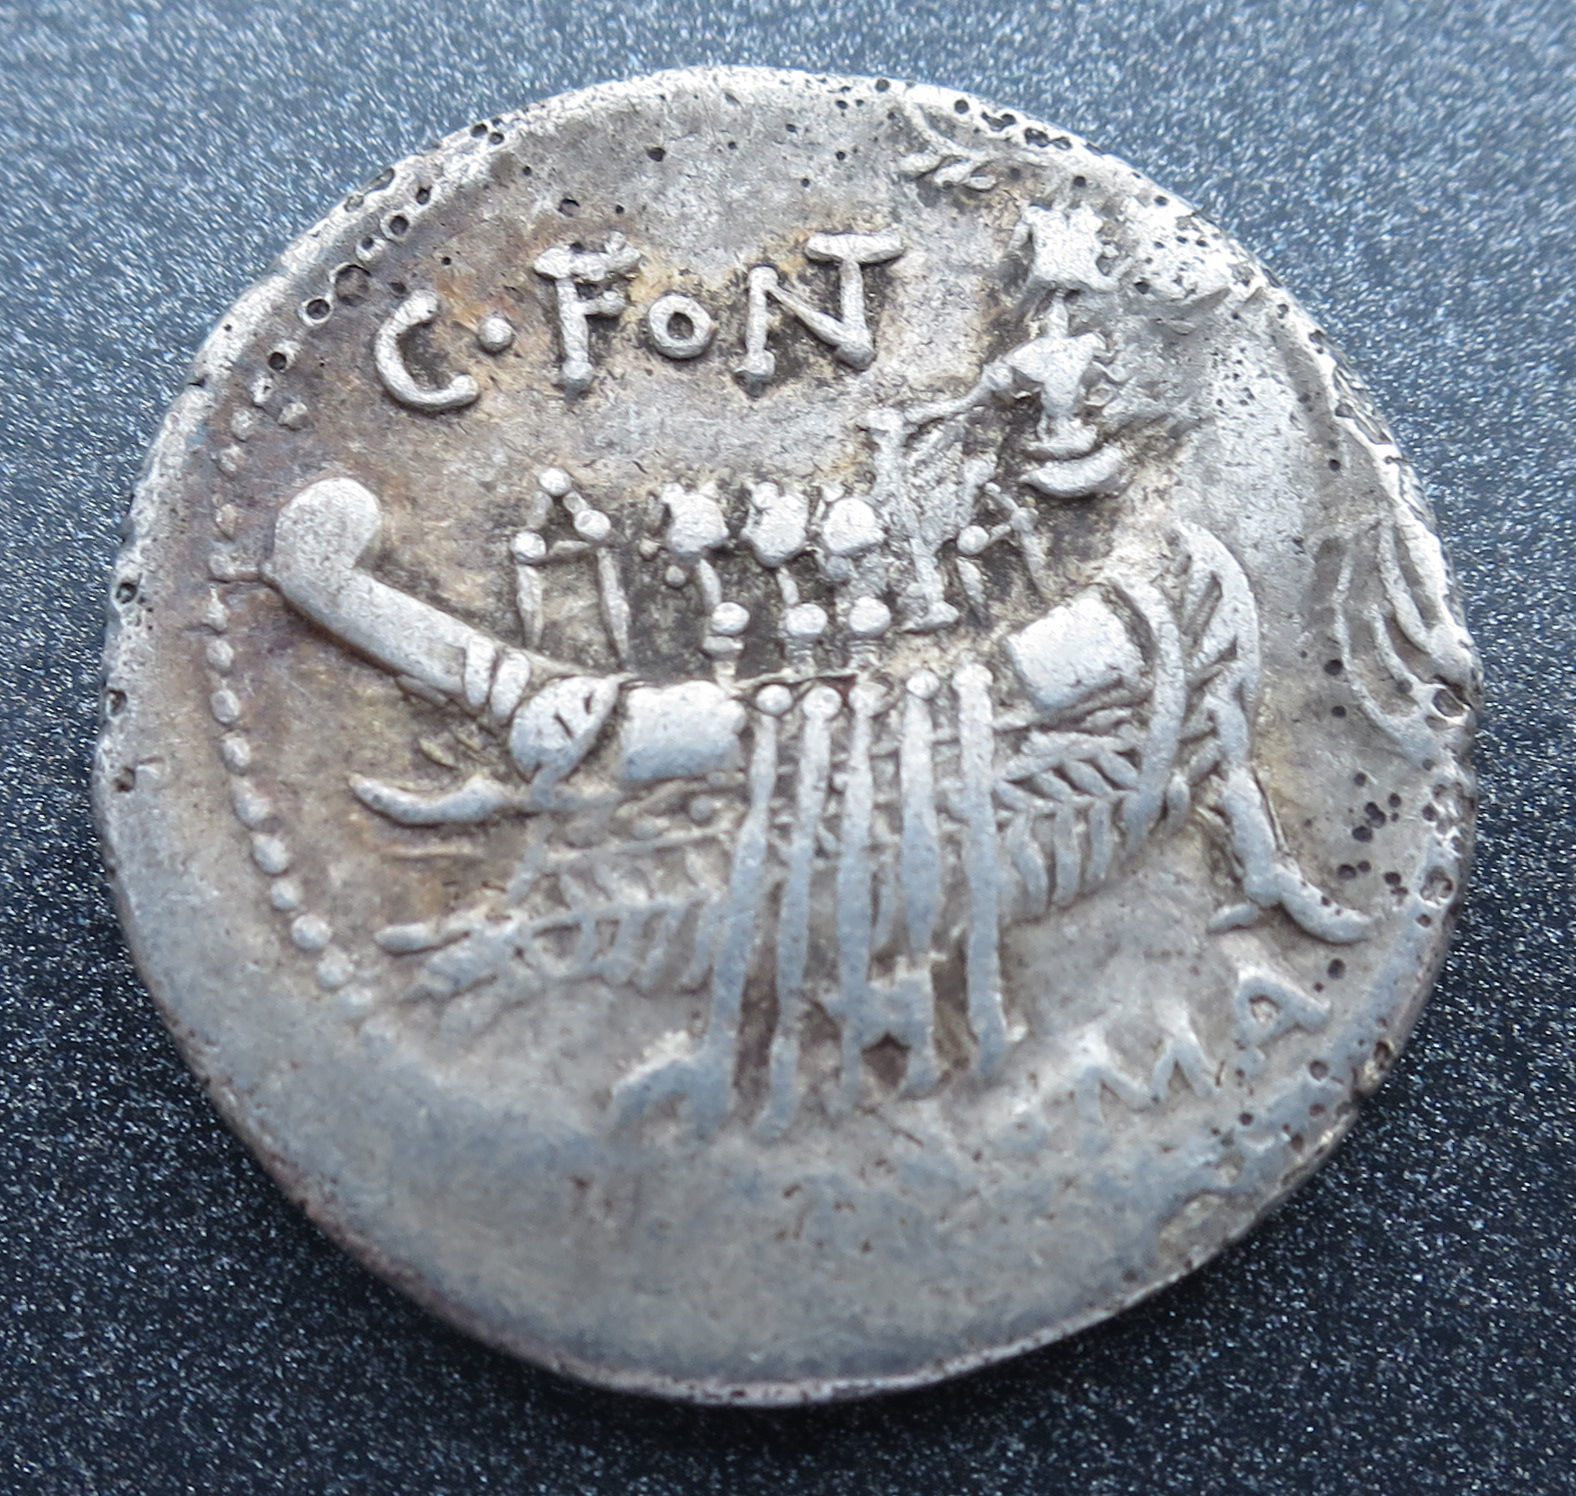 114-113  B.C. silver roman republic denarius coin C Fonteius Trireme